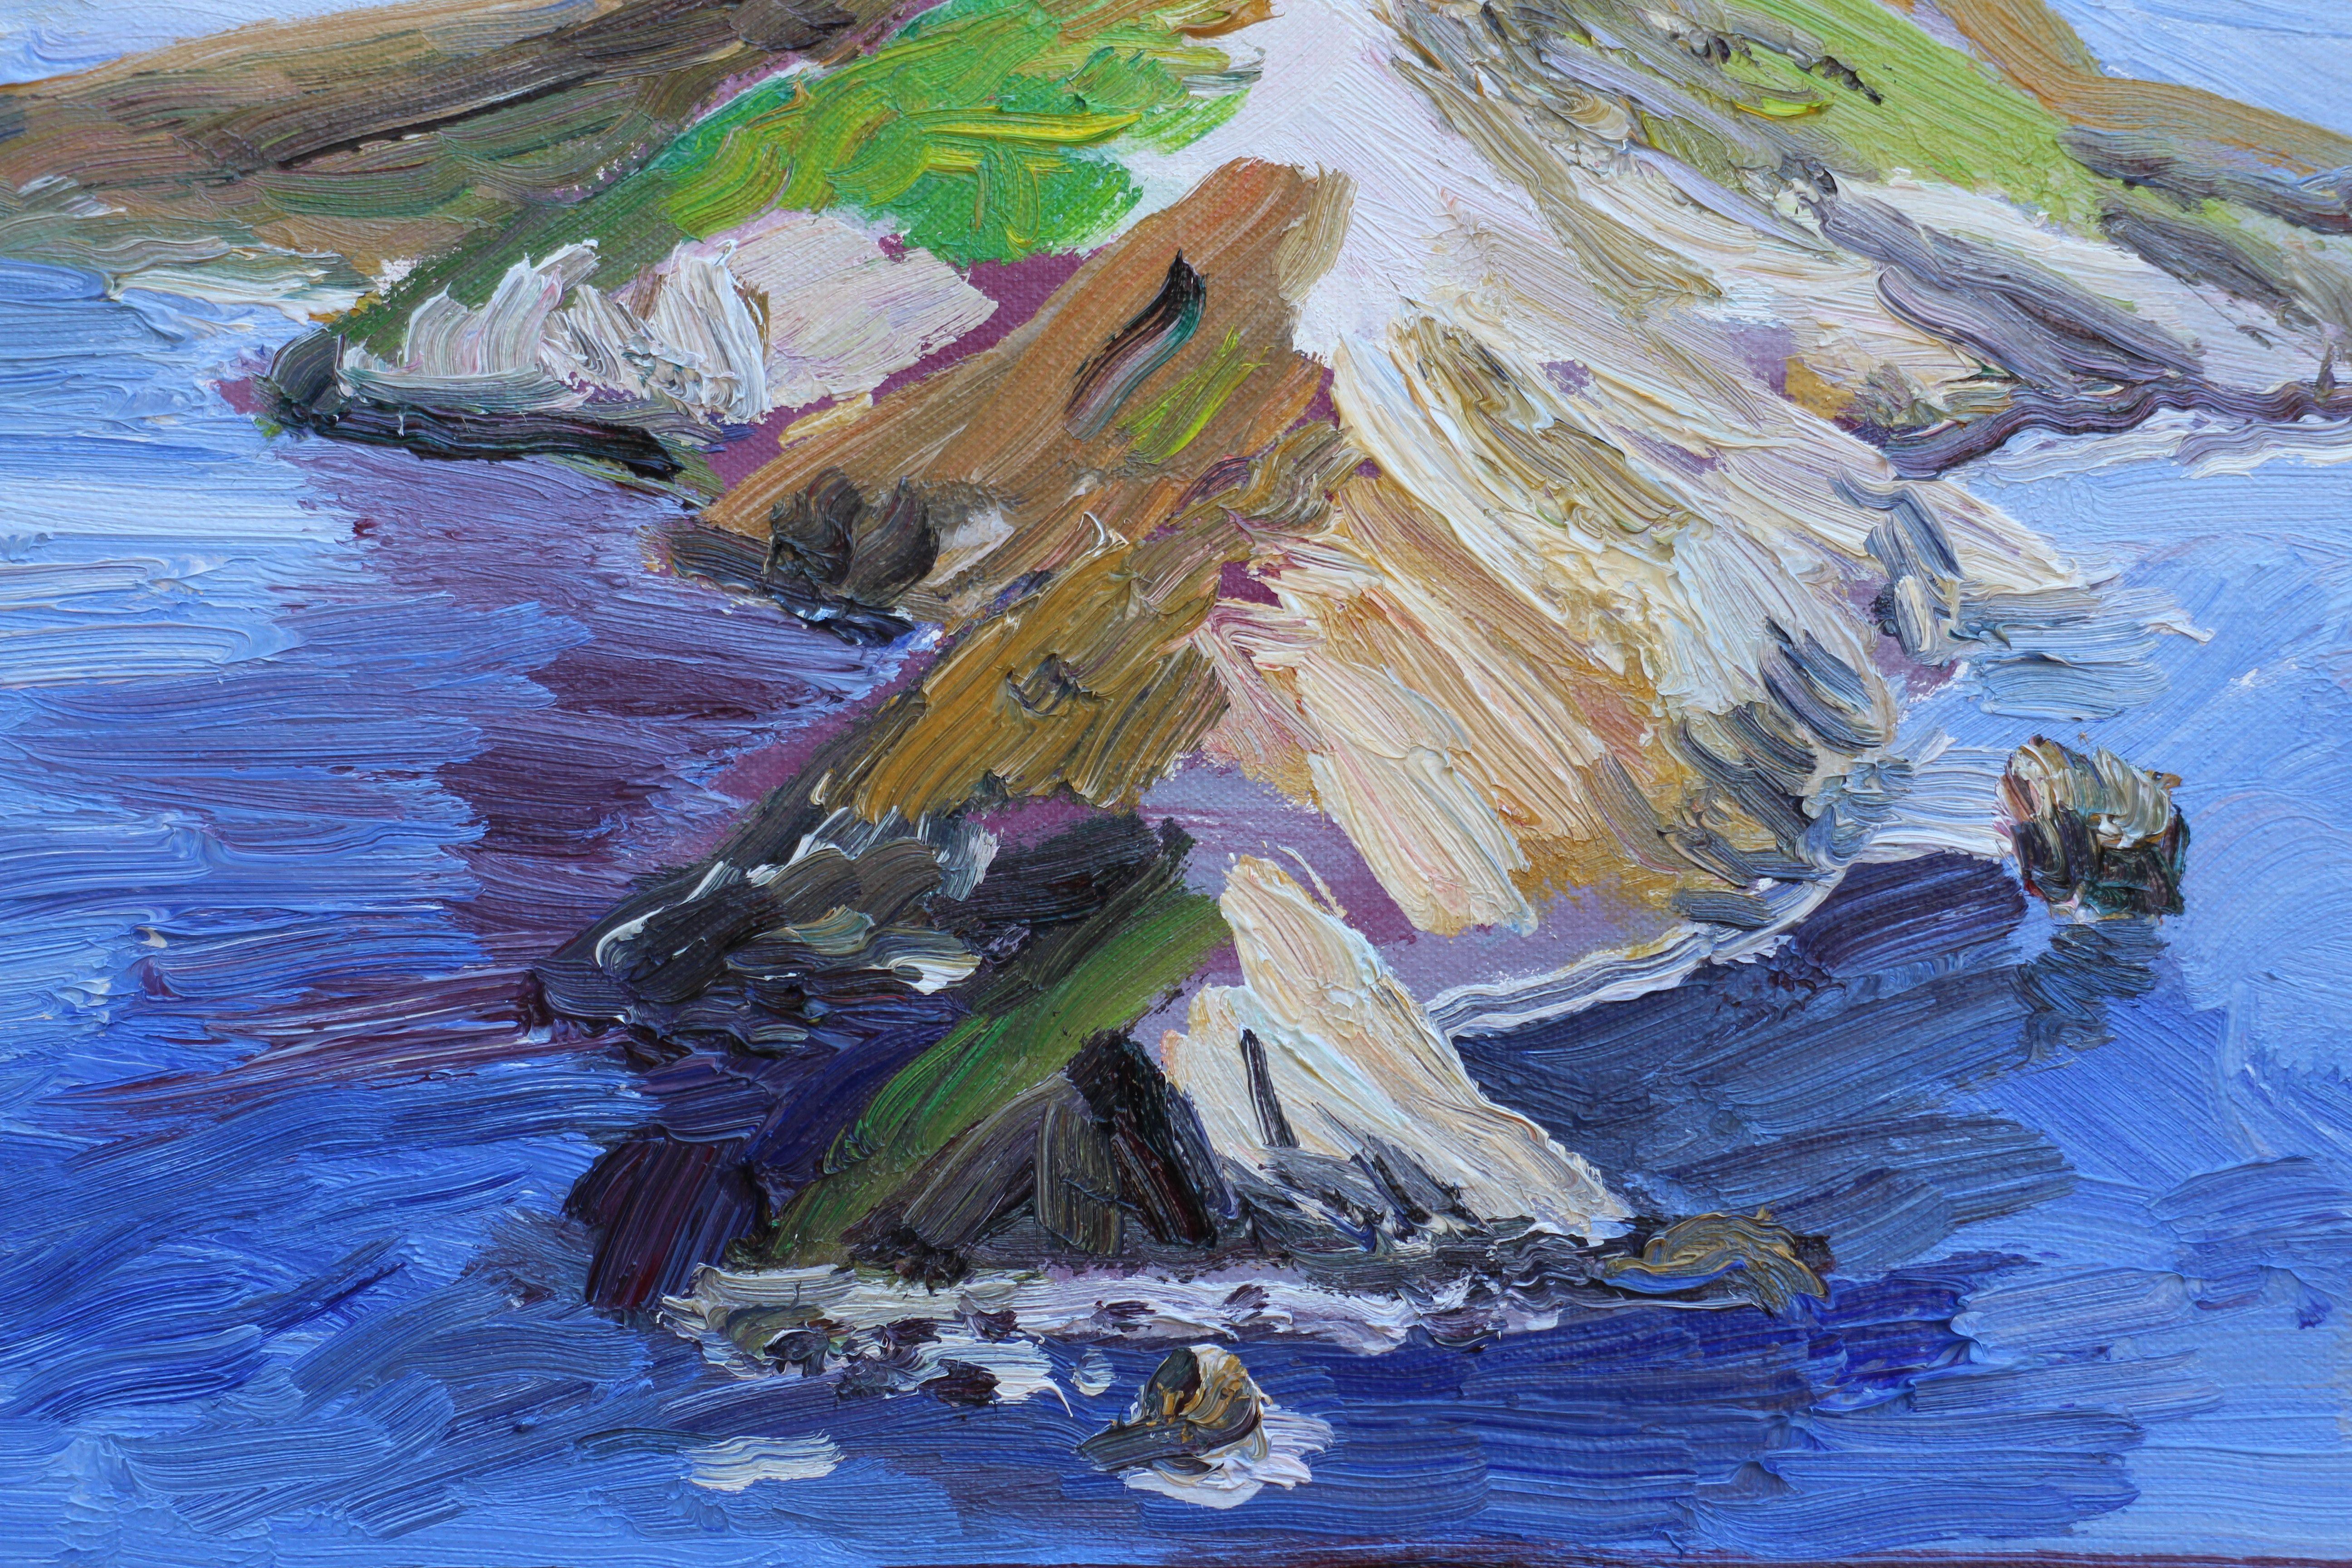 Imac-Schreibtisch mit Catalina-Insel auf dem Schirm, Gemälde, Öl auf Leinwand (Impressionismus), Painting, von John Kilduff